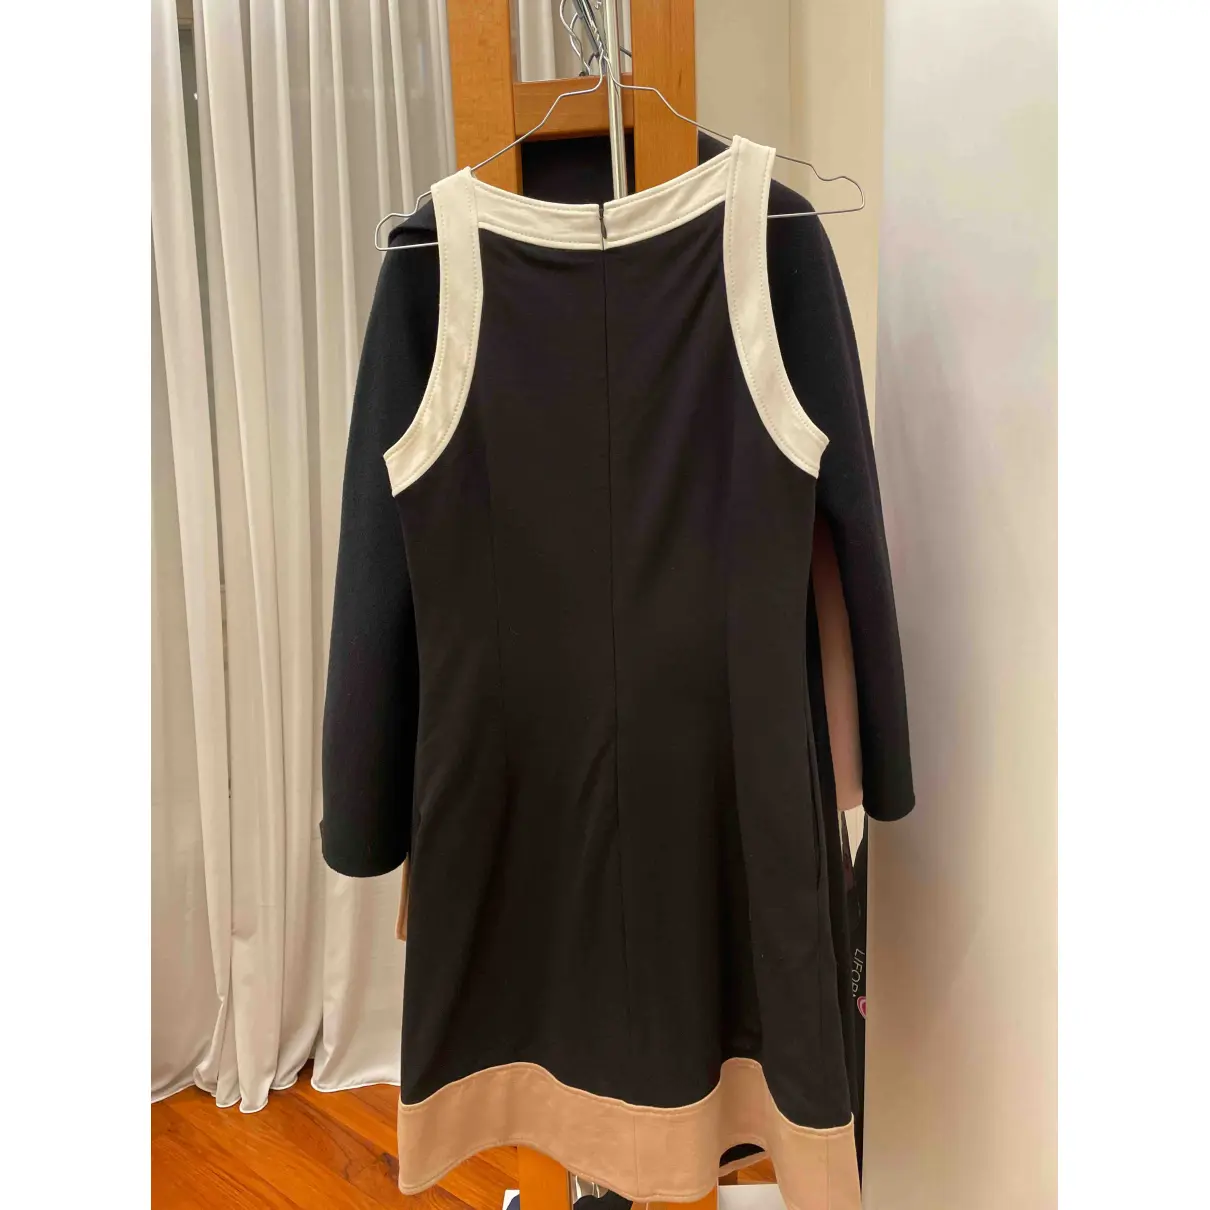 Buy Gio' Guerreri Mini dress online